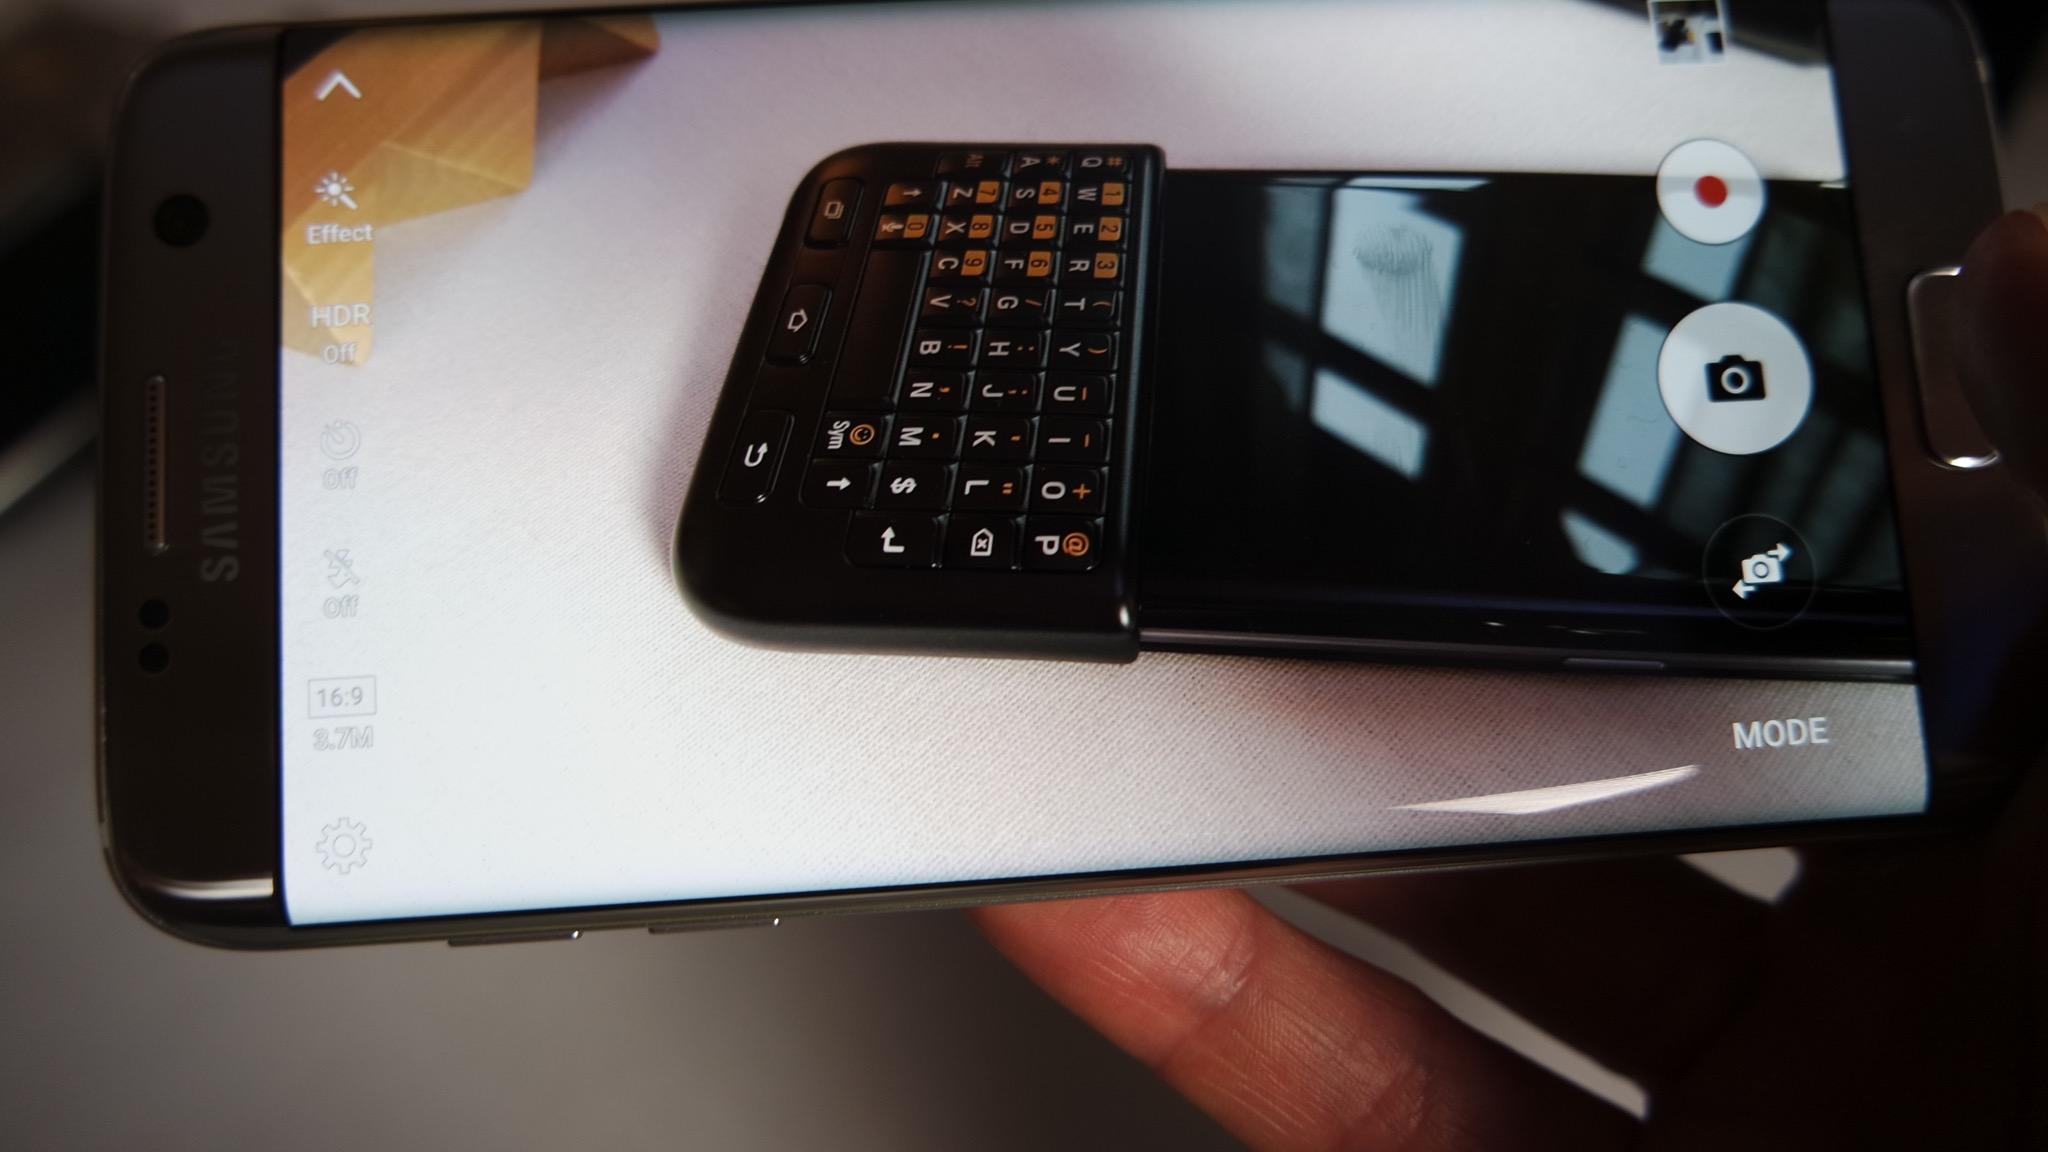 Samsung Galaxy S7 Edge haciendo foto a teclado con la imagen en pantalla